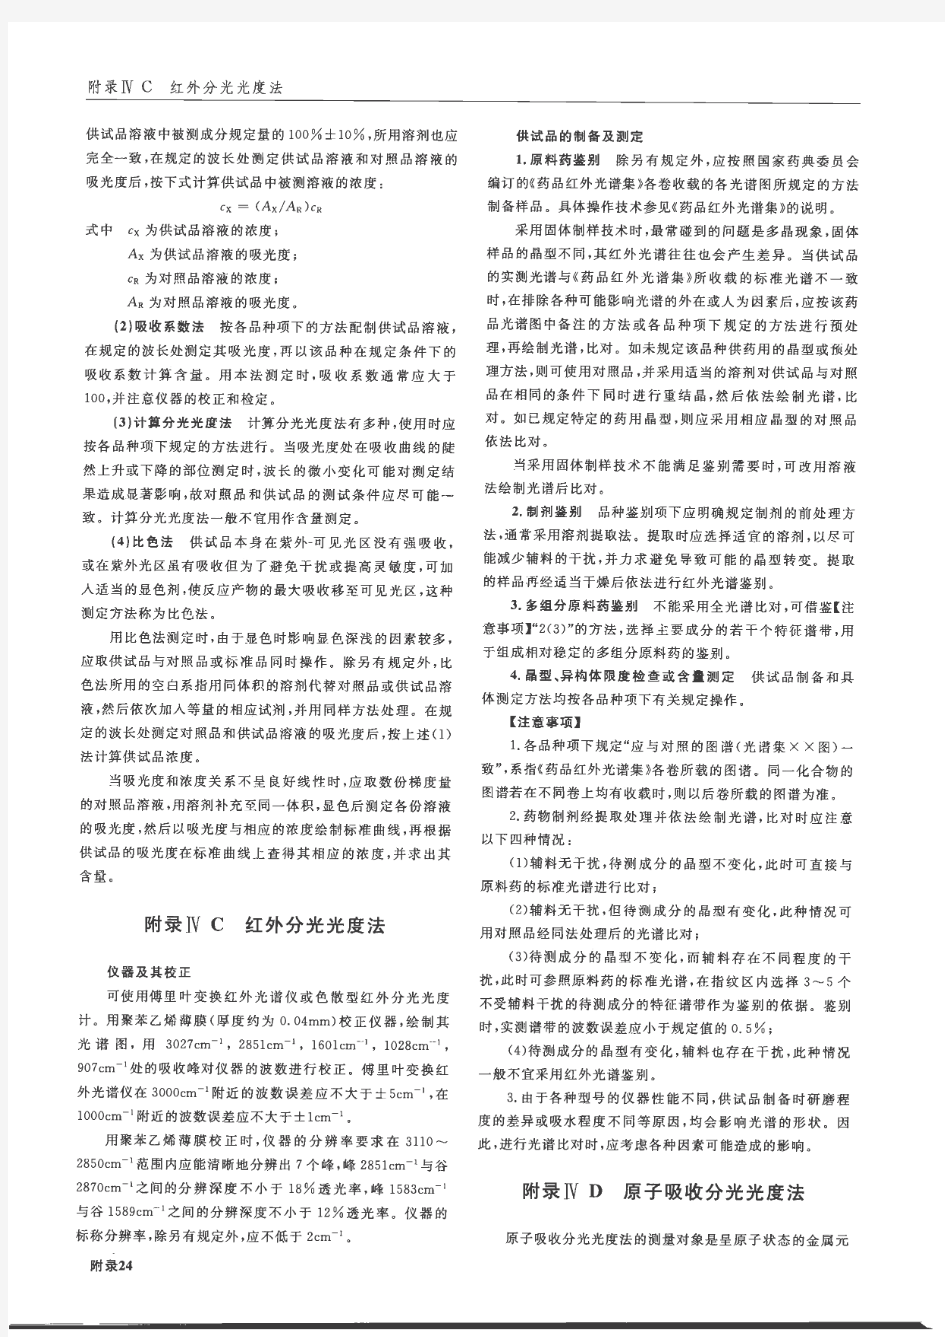 中国药典2010版二部附录IVA紫外-可见分光光度法